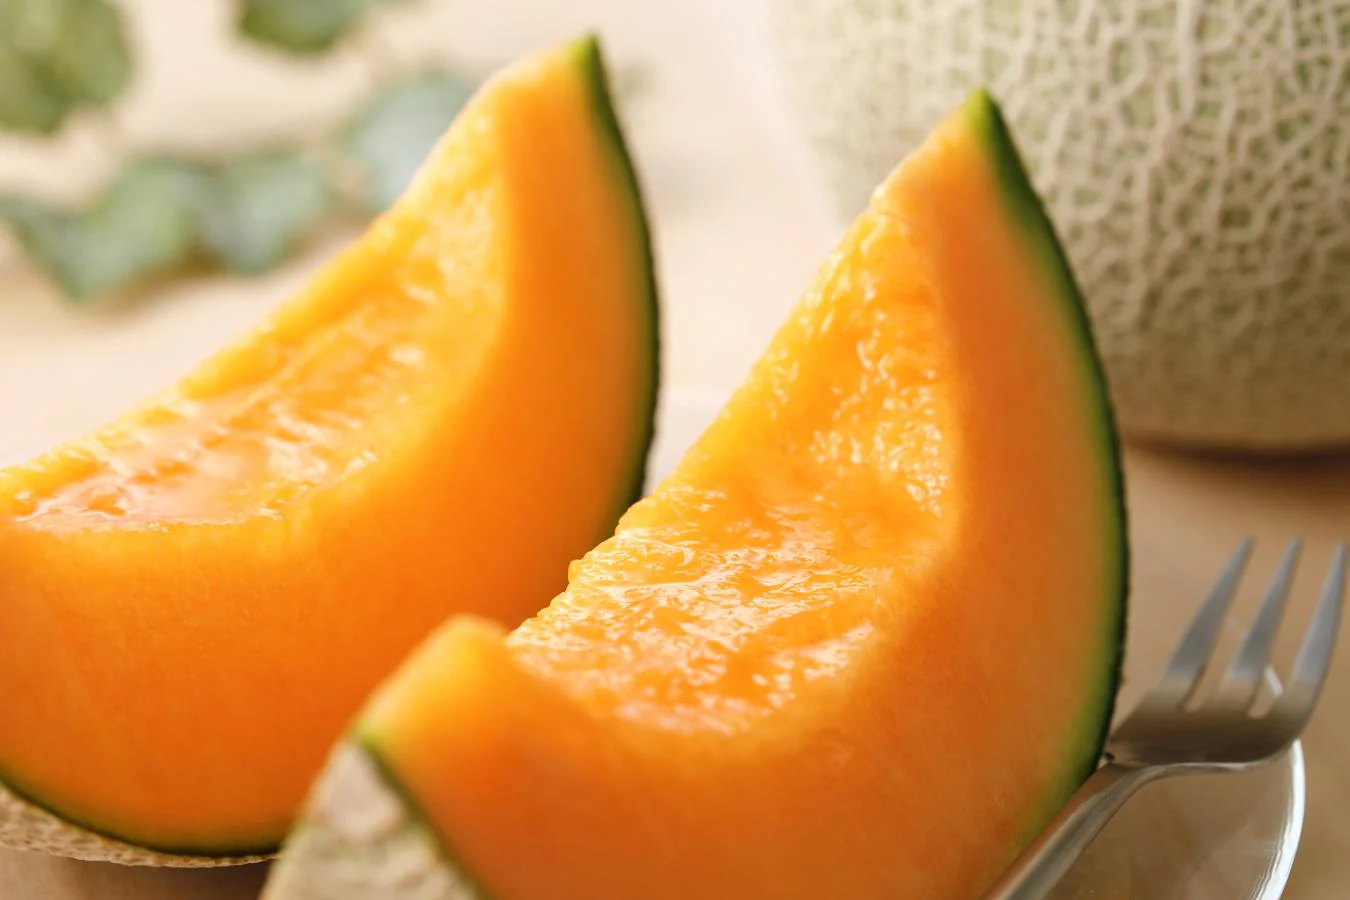 Melón. Es una de las frutas más comestibles en verano, y el melón también es una fuente rica en agua: 92,4 gramos de agua por cada 100 gramos de melón.